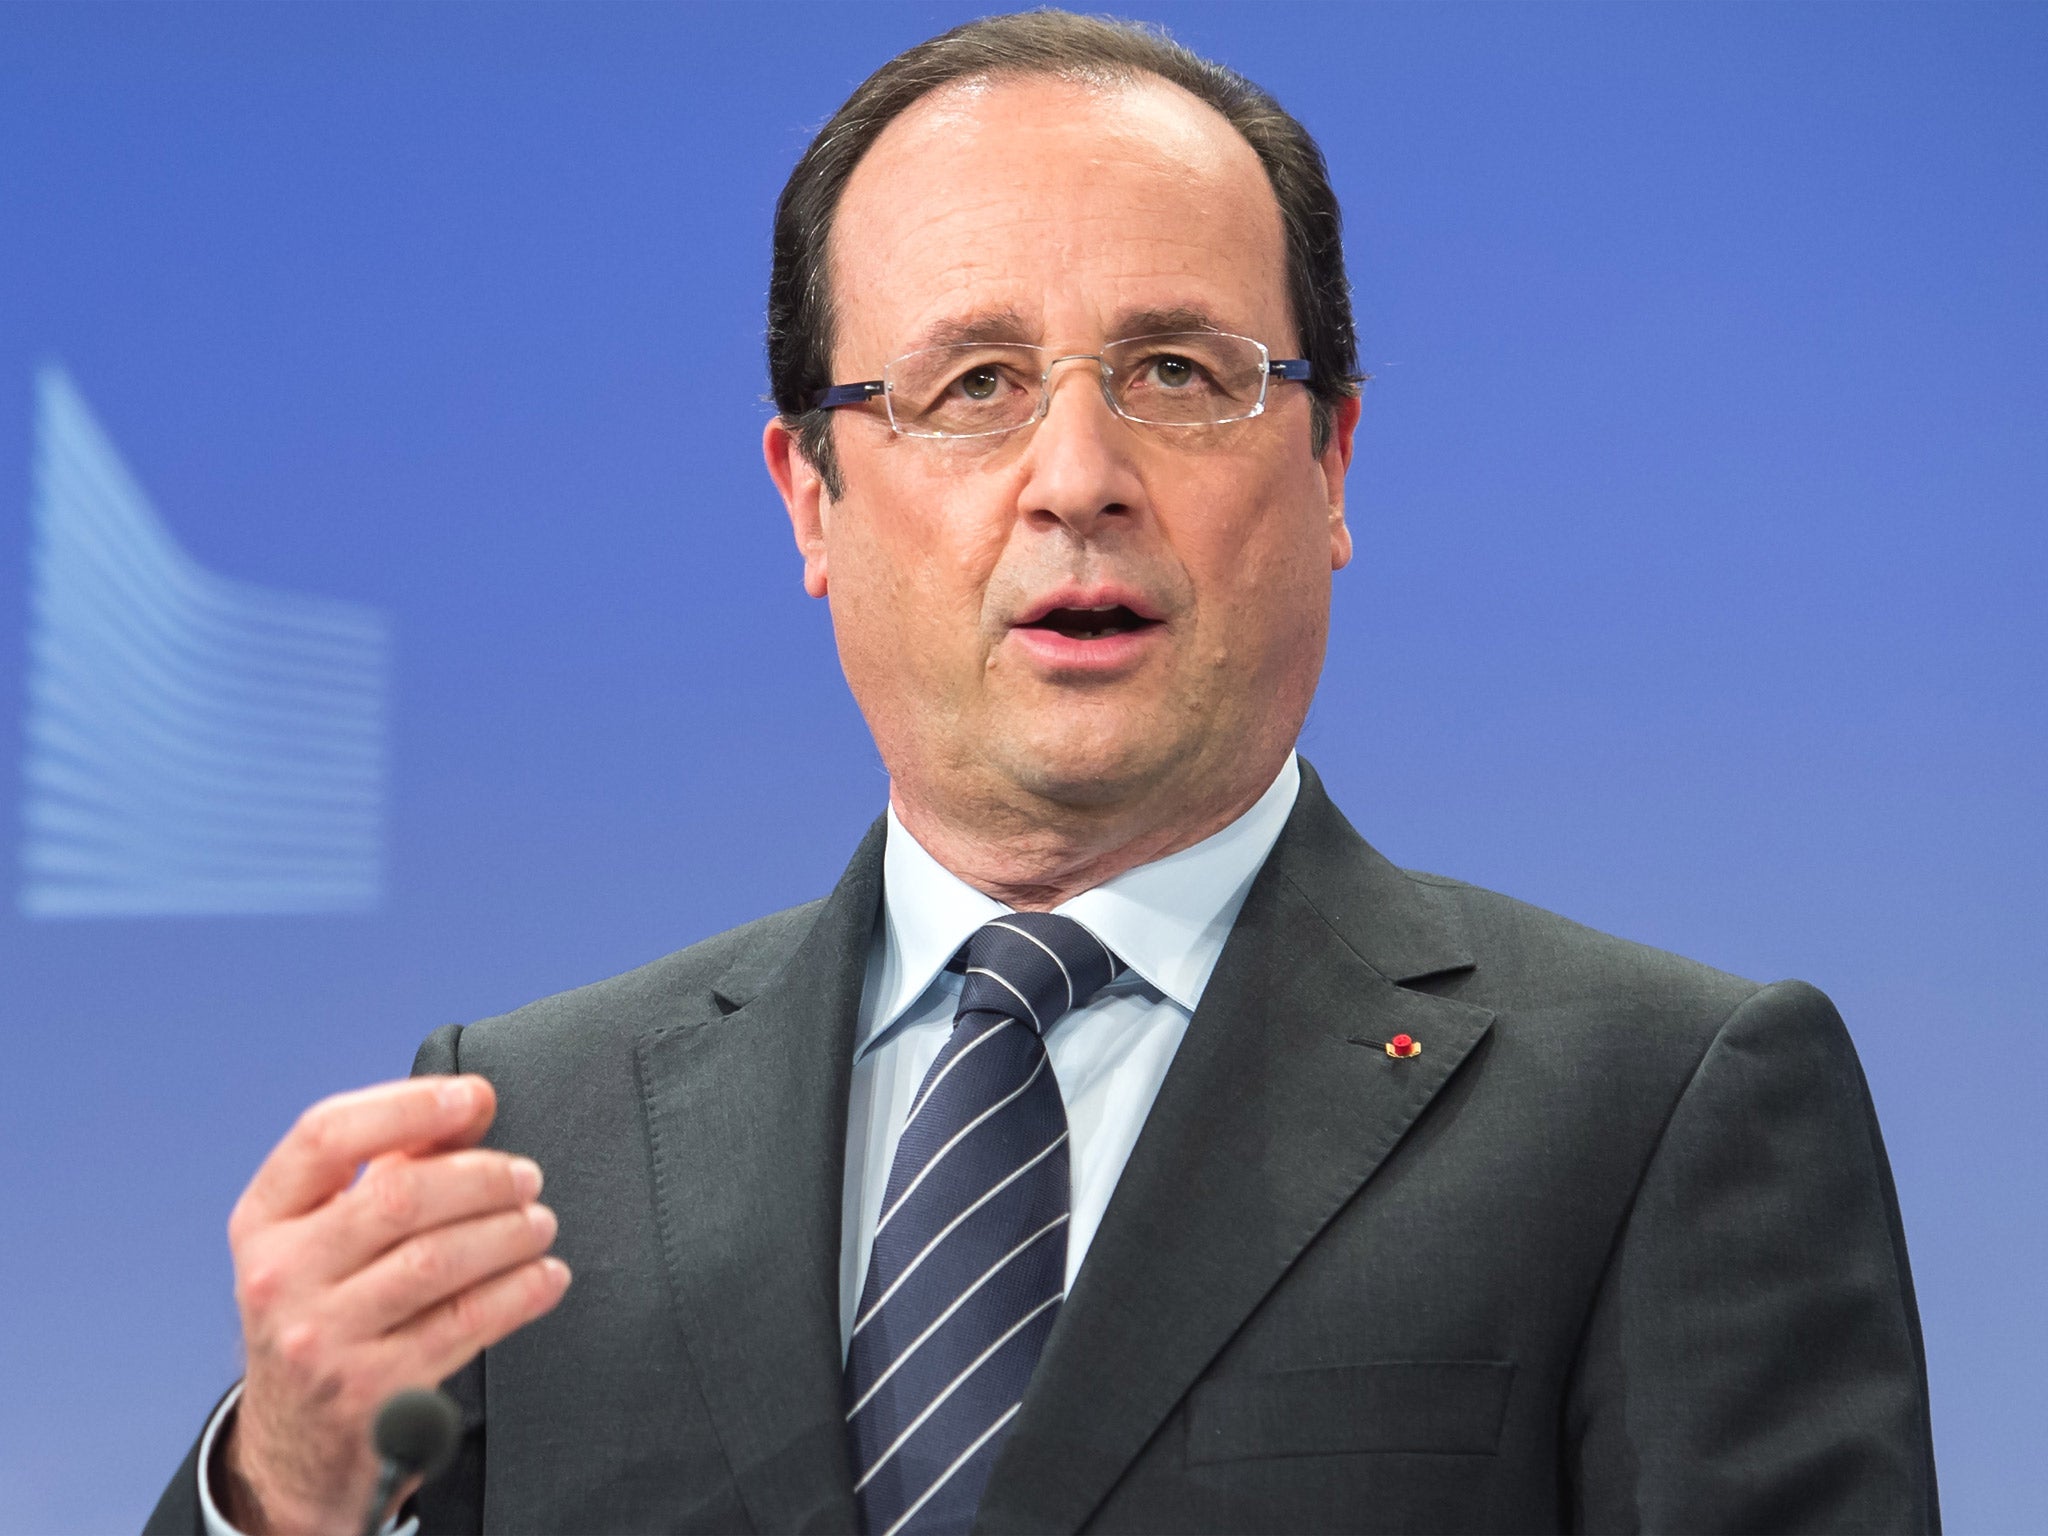 François Hollande says EU growth is vital